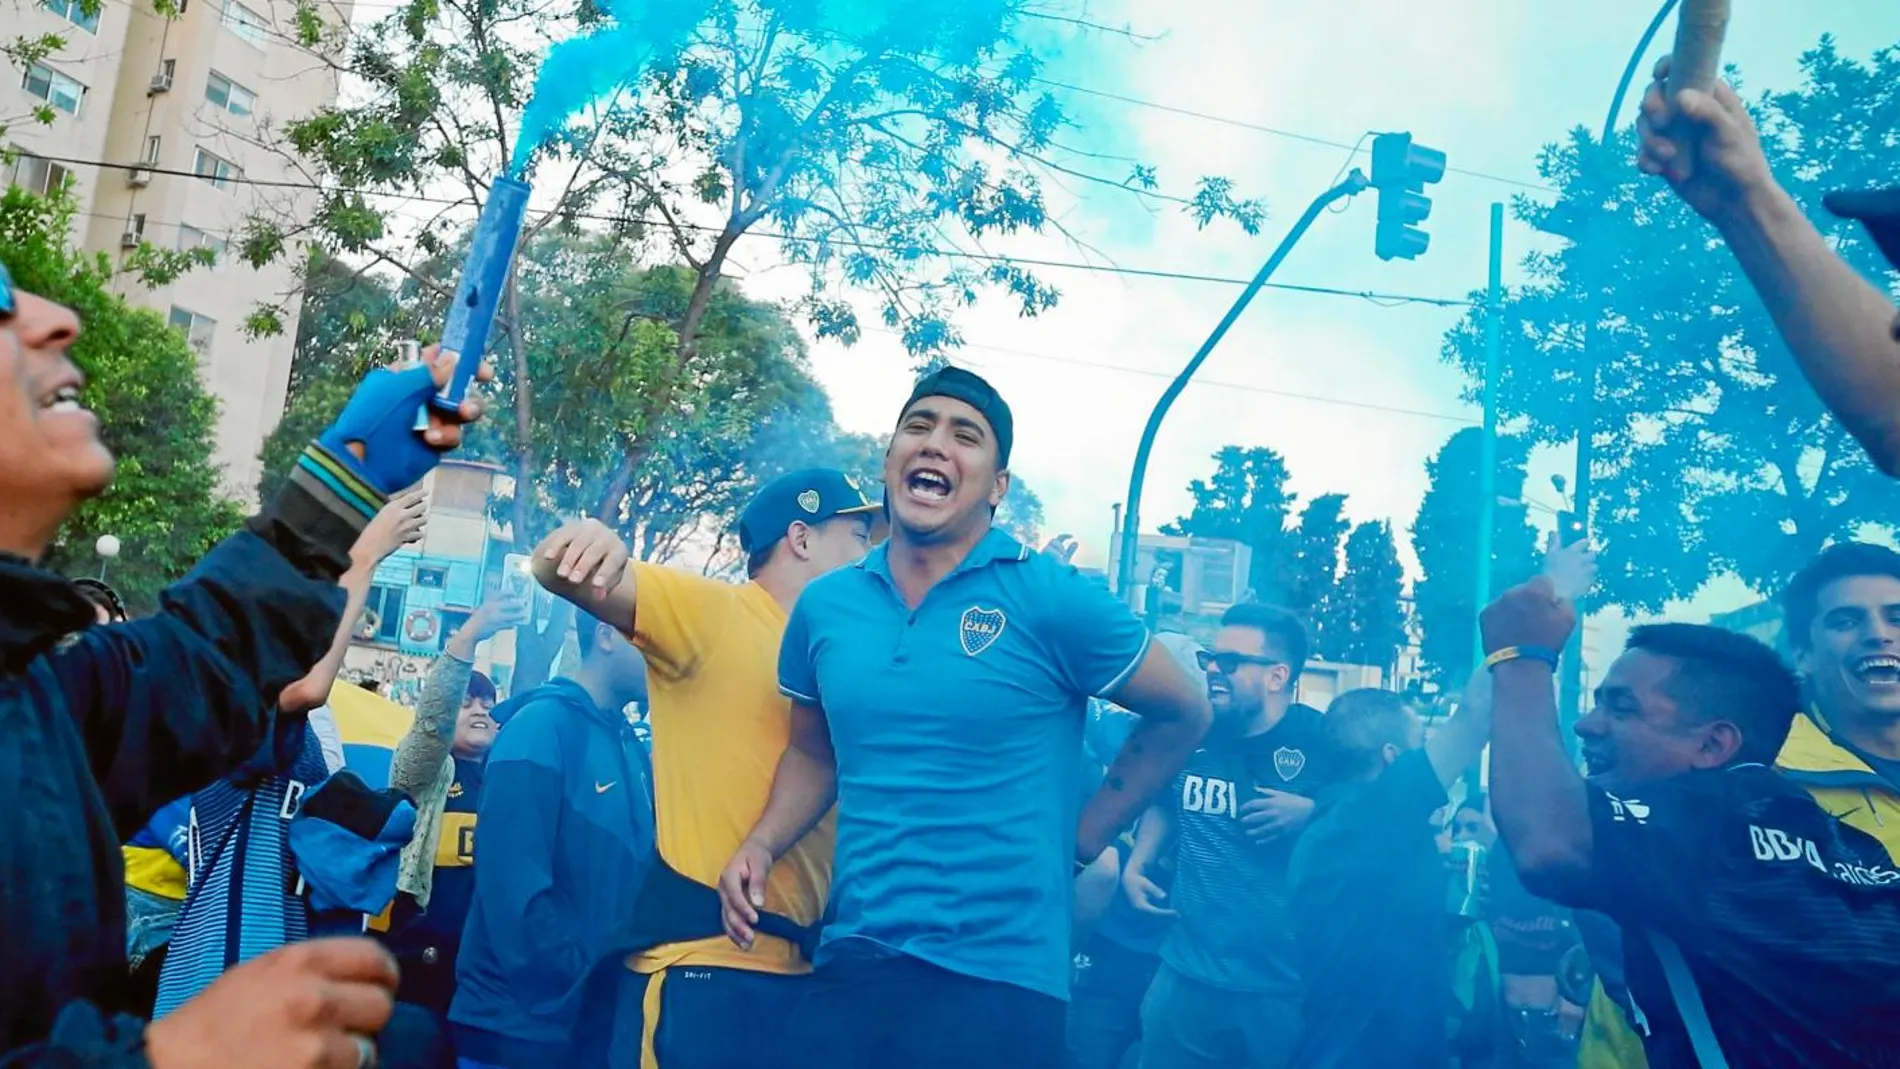 Los seguidores de Boca Juniors se aprestan para venir a Madrid. Los más radicales están controlados por la Policía española y si viajan serán expulsados inmediatamente. Foto: Efe